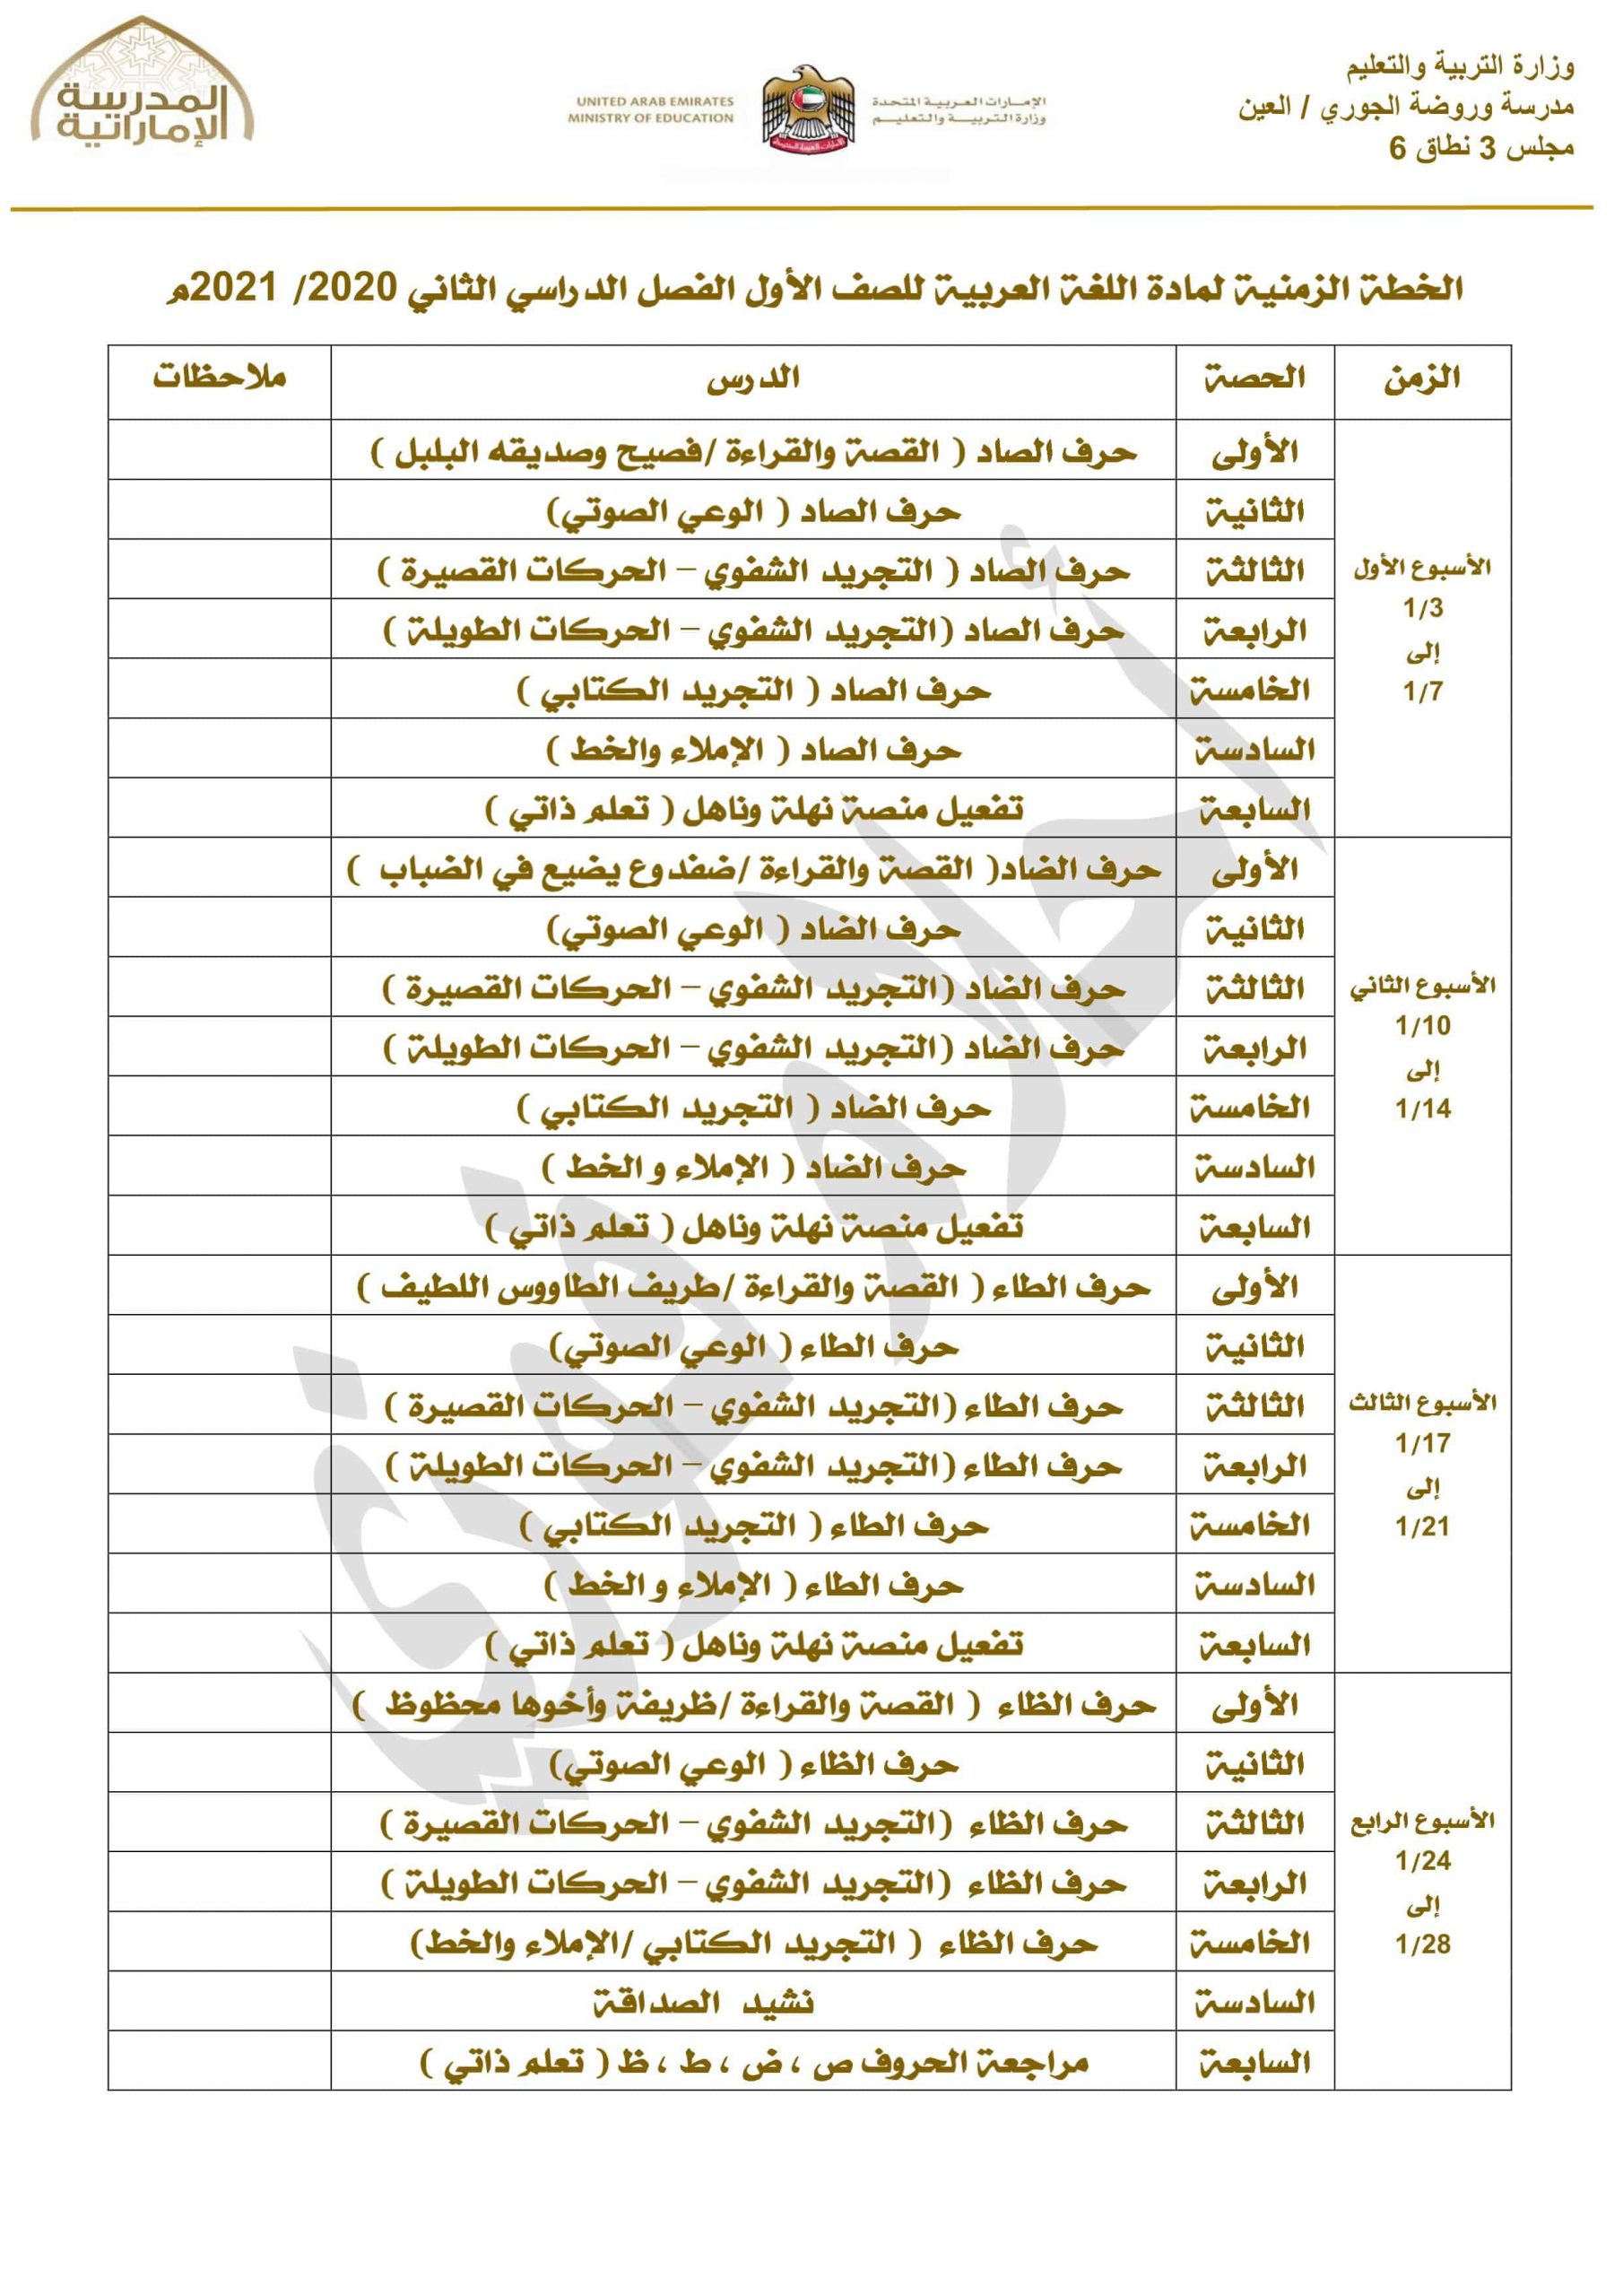 الخطة الزمنية الفصل الدراسي الثاني 2020-2021 الصف الاول مادة اللغة العربية 